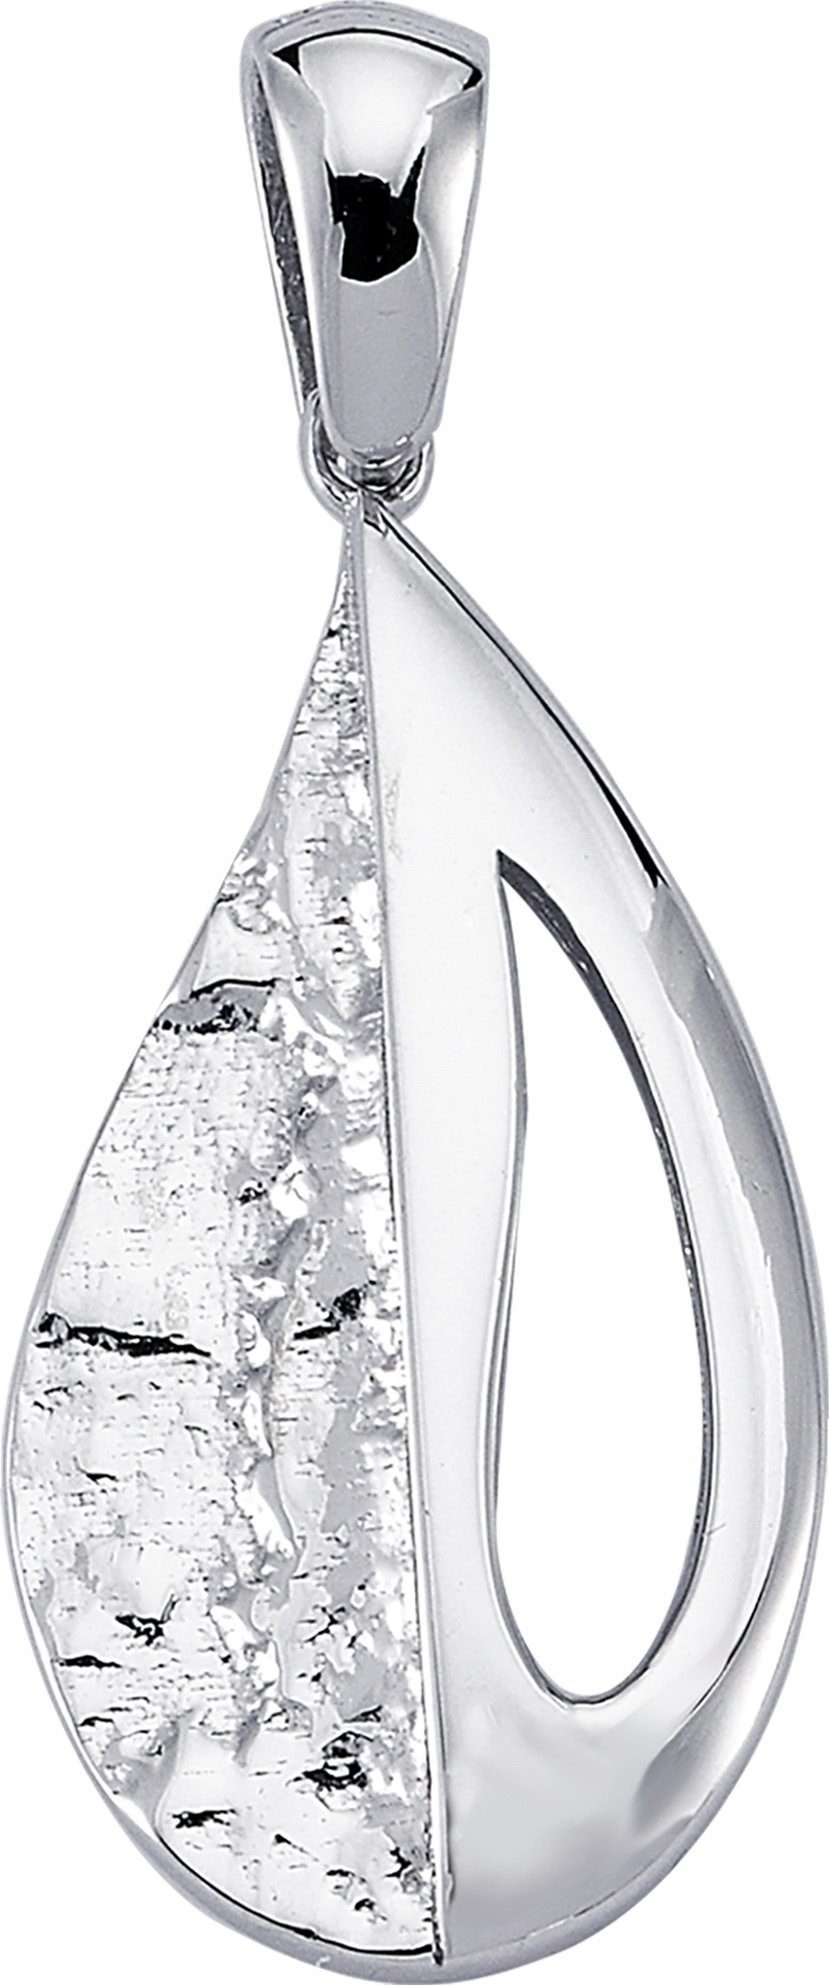 Balia Kettenanhänger Balia Damen Kettenanhänger Silber, Kettenanhänger (Drops) ca. 3,3cm, 925 Sterling Silber